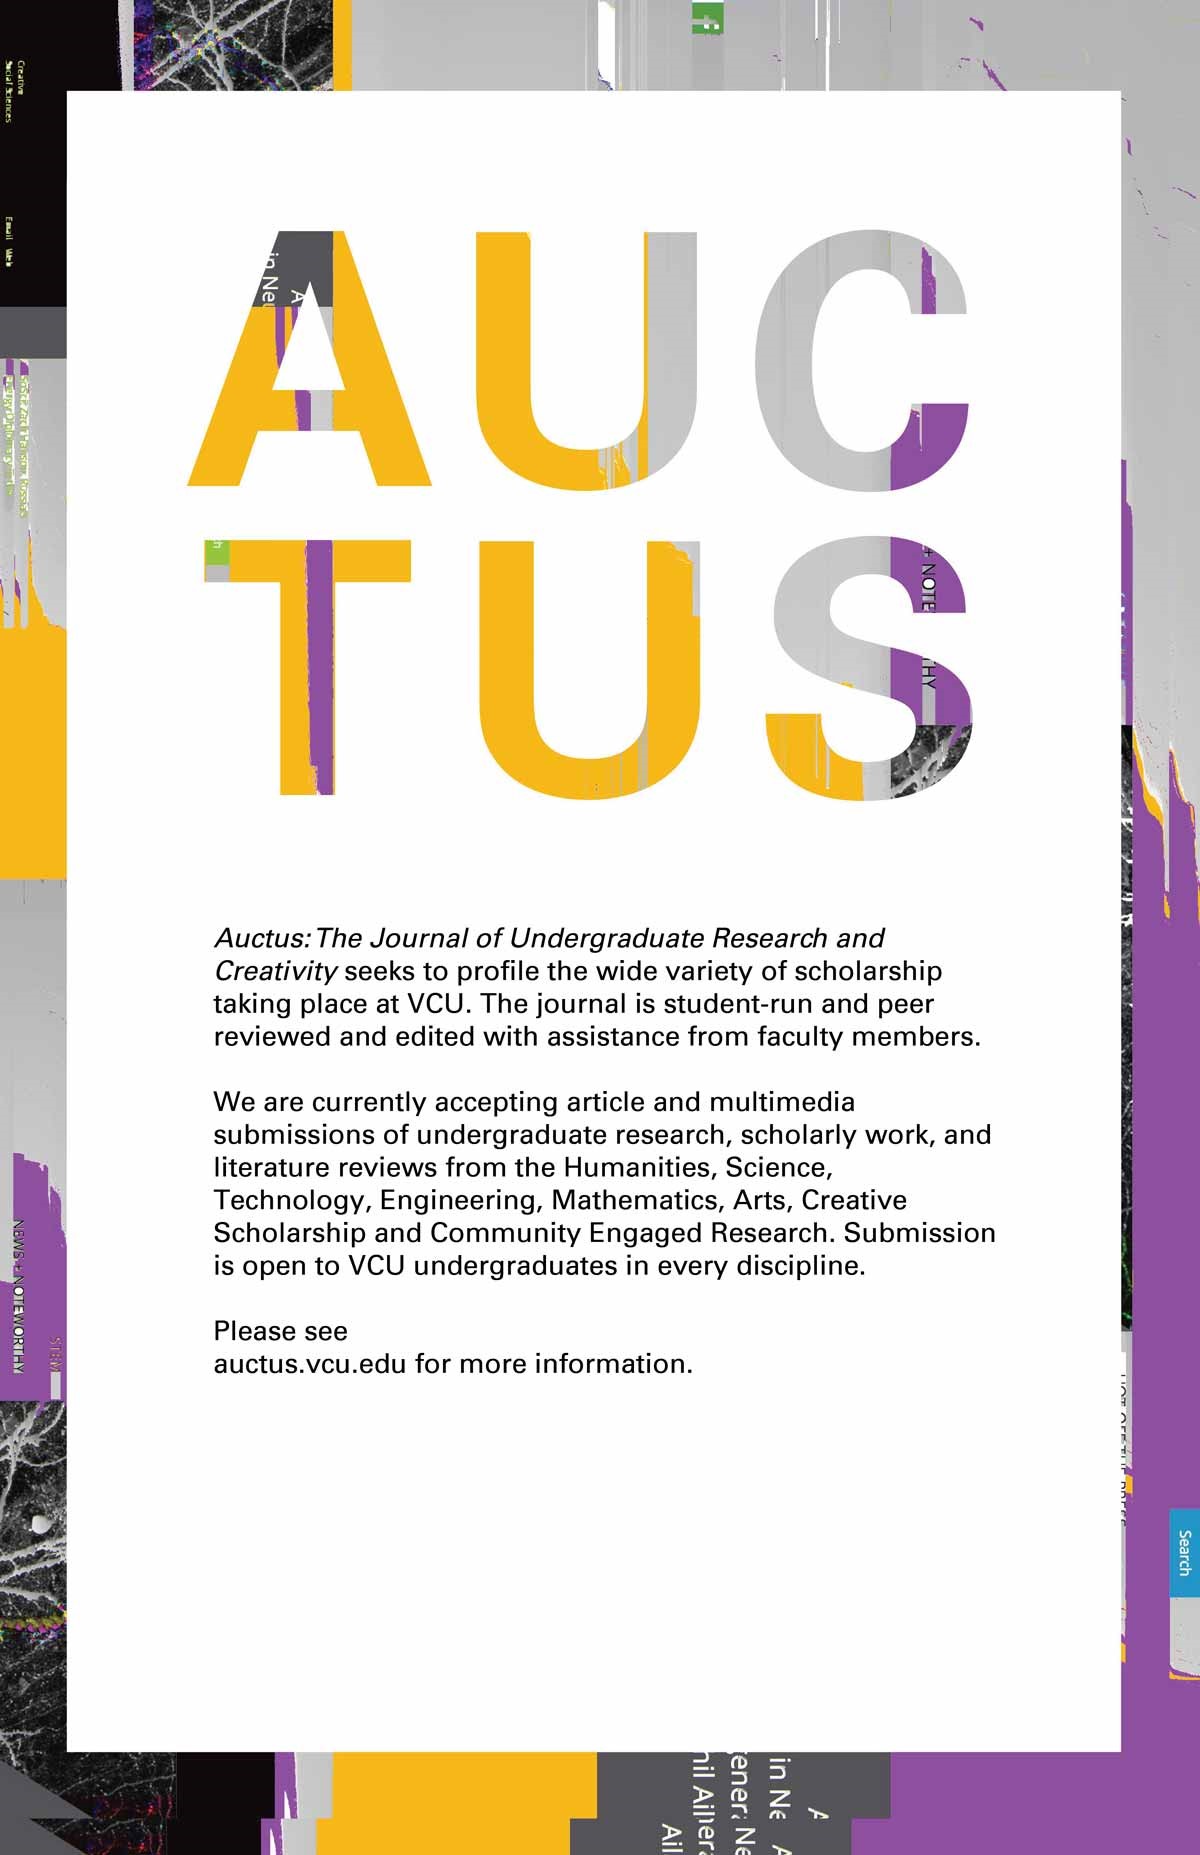 Auctus logo